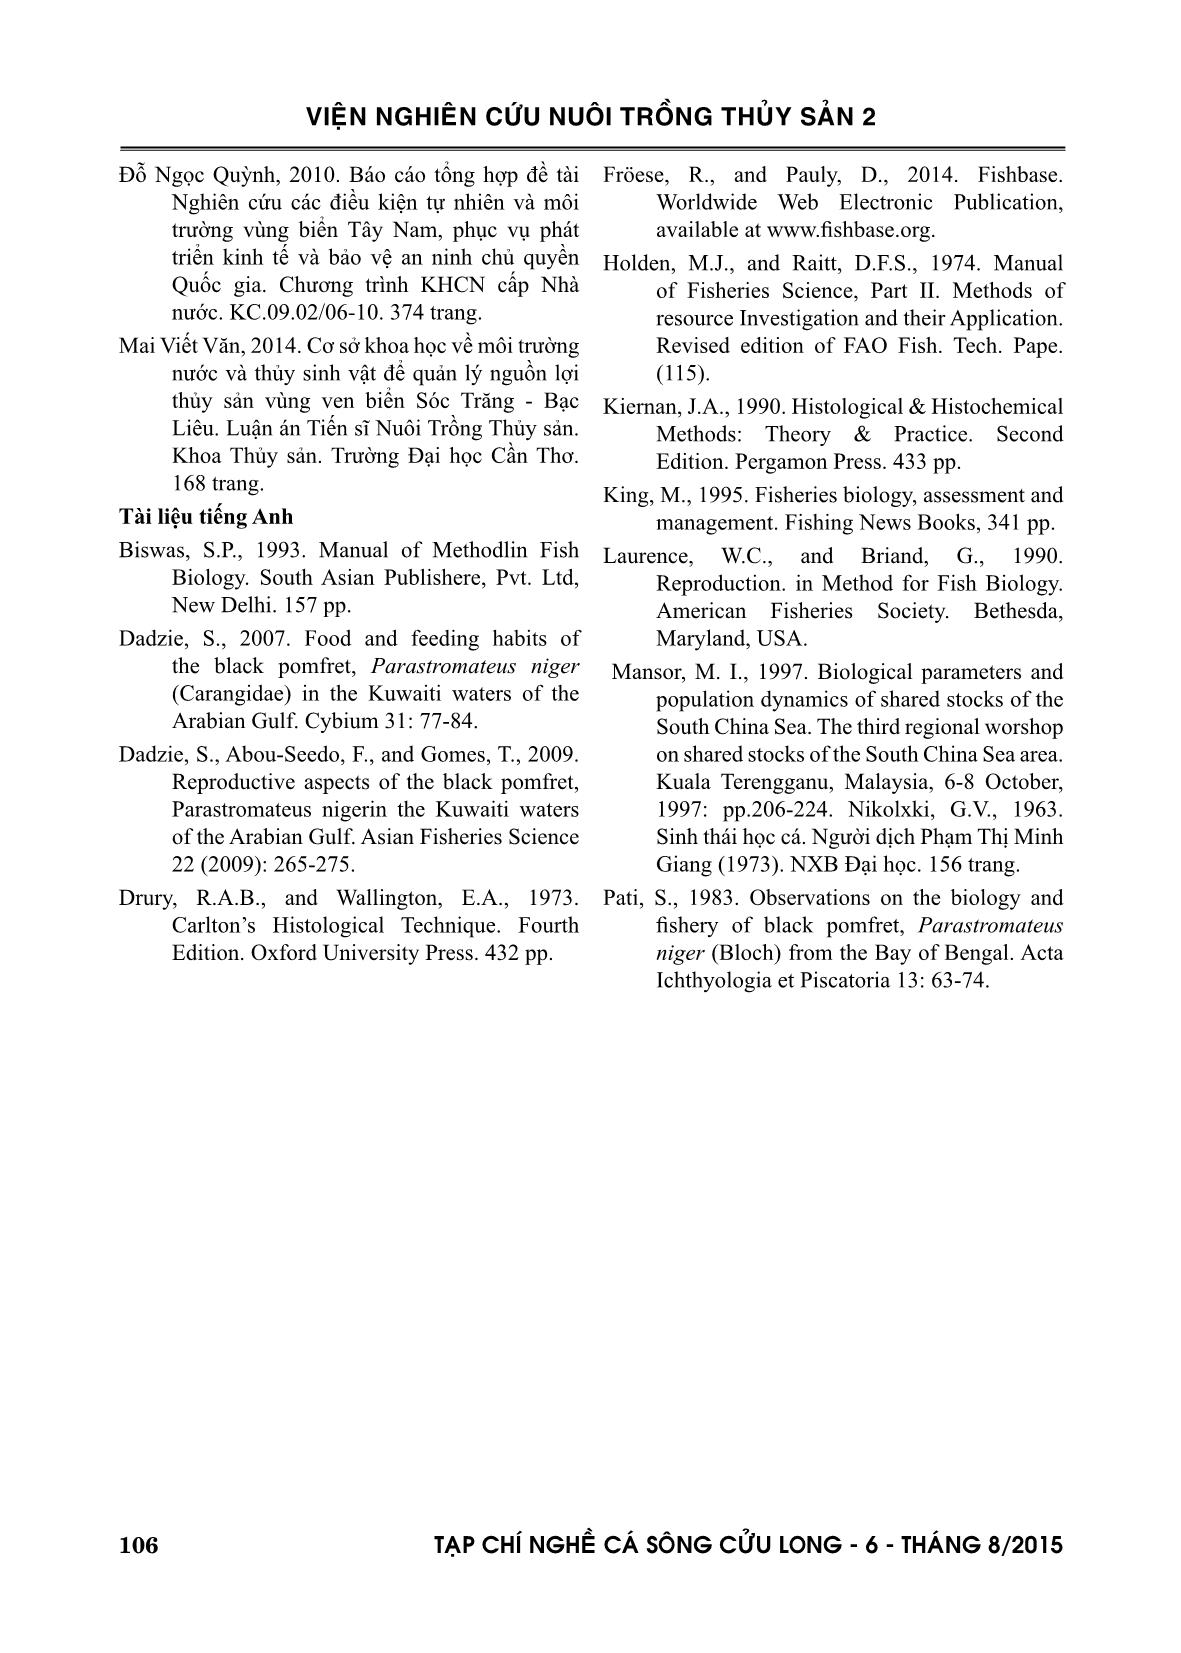 Đặc điểm sinh học sinh sản cá chim đen parastromateus niger (bloch, 1795) trang 10